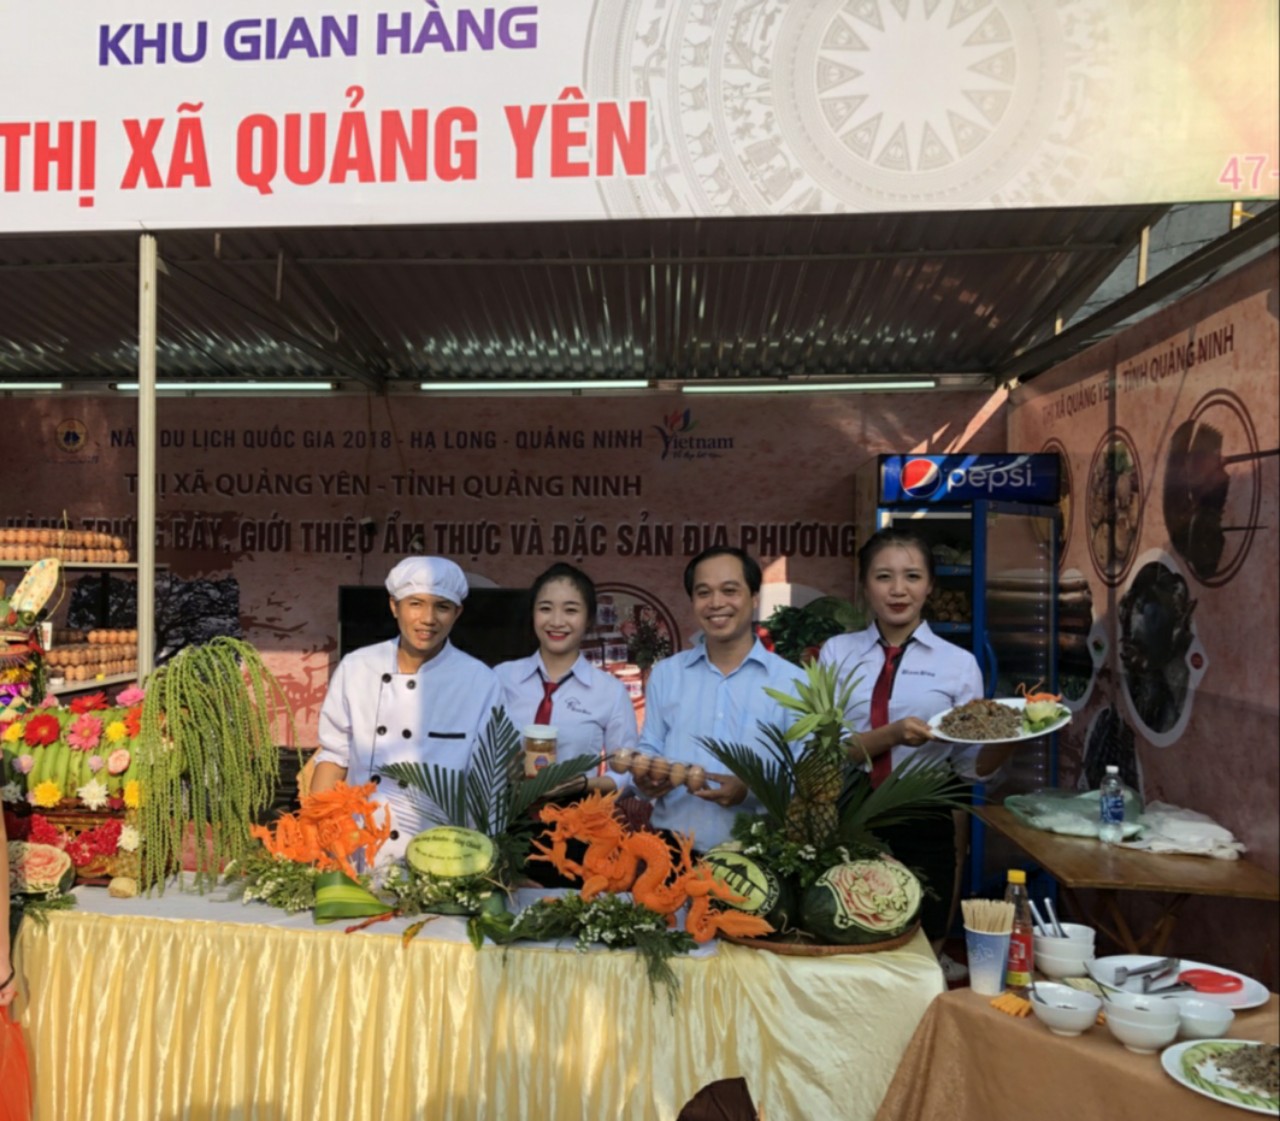    Gian hàng ẩm thực của TX Quảng Yên tại Liên hoan ẩm thực toàn quốc - Quảng Ninh năm 2018.